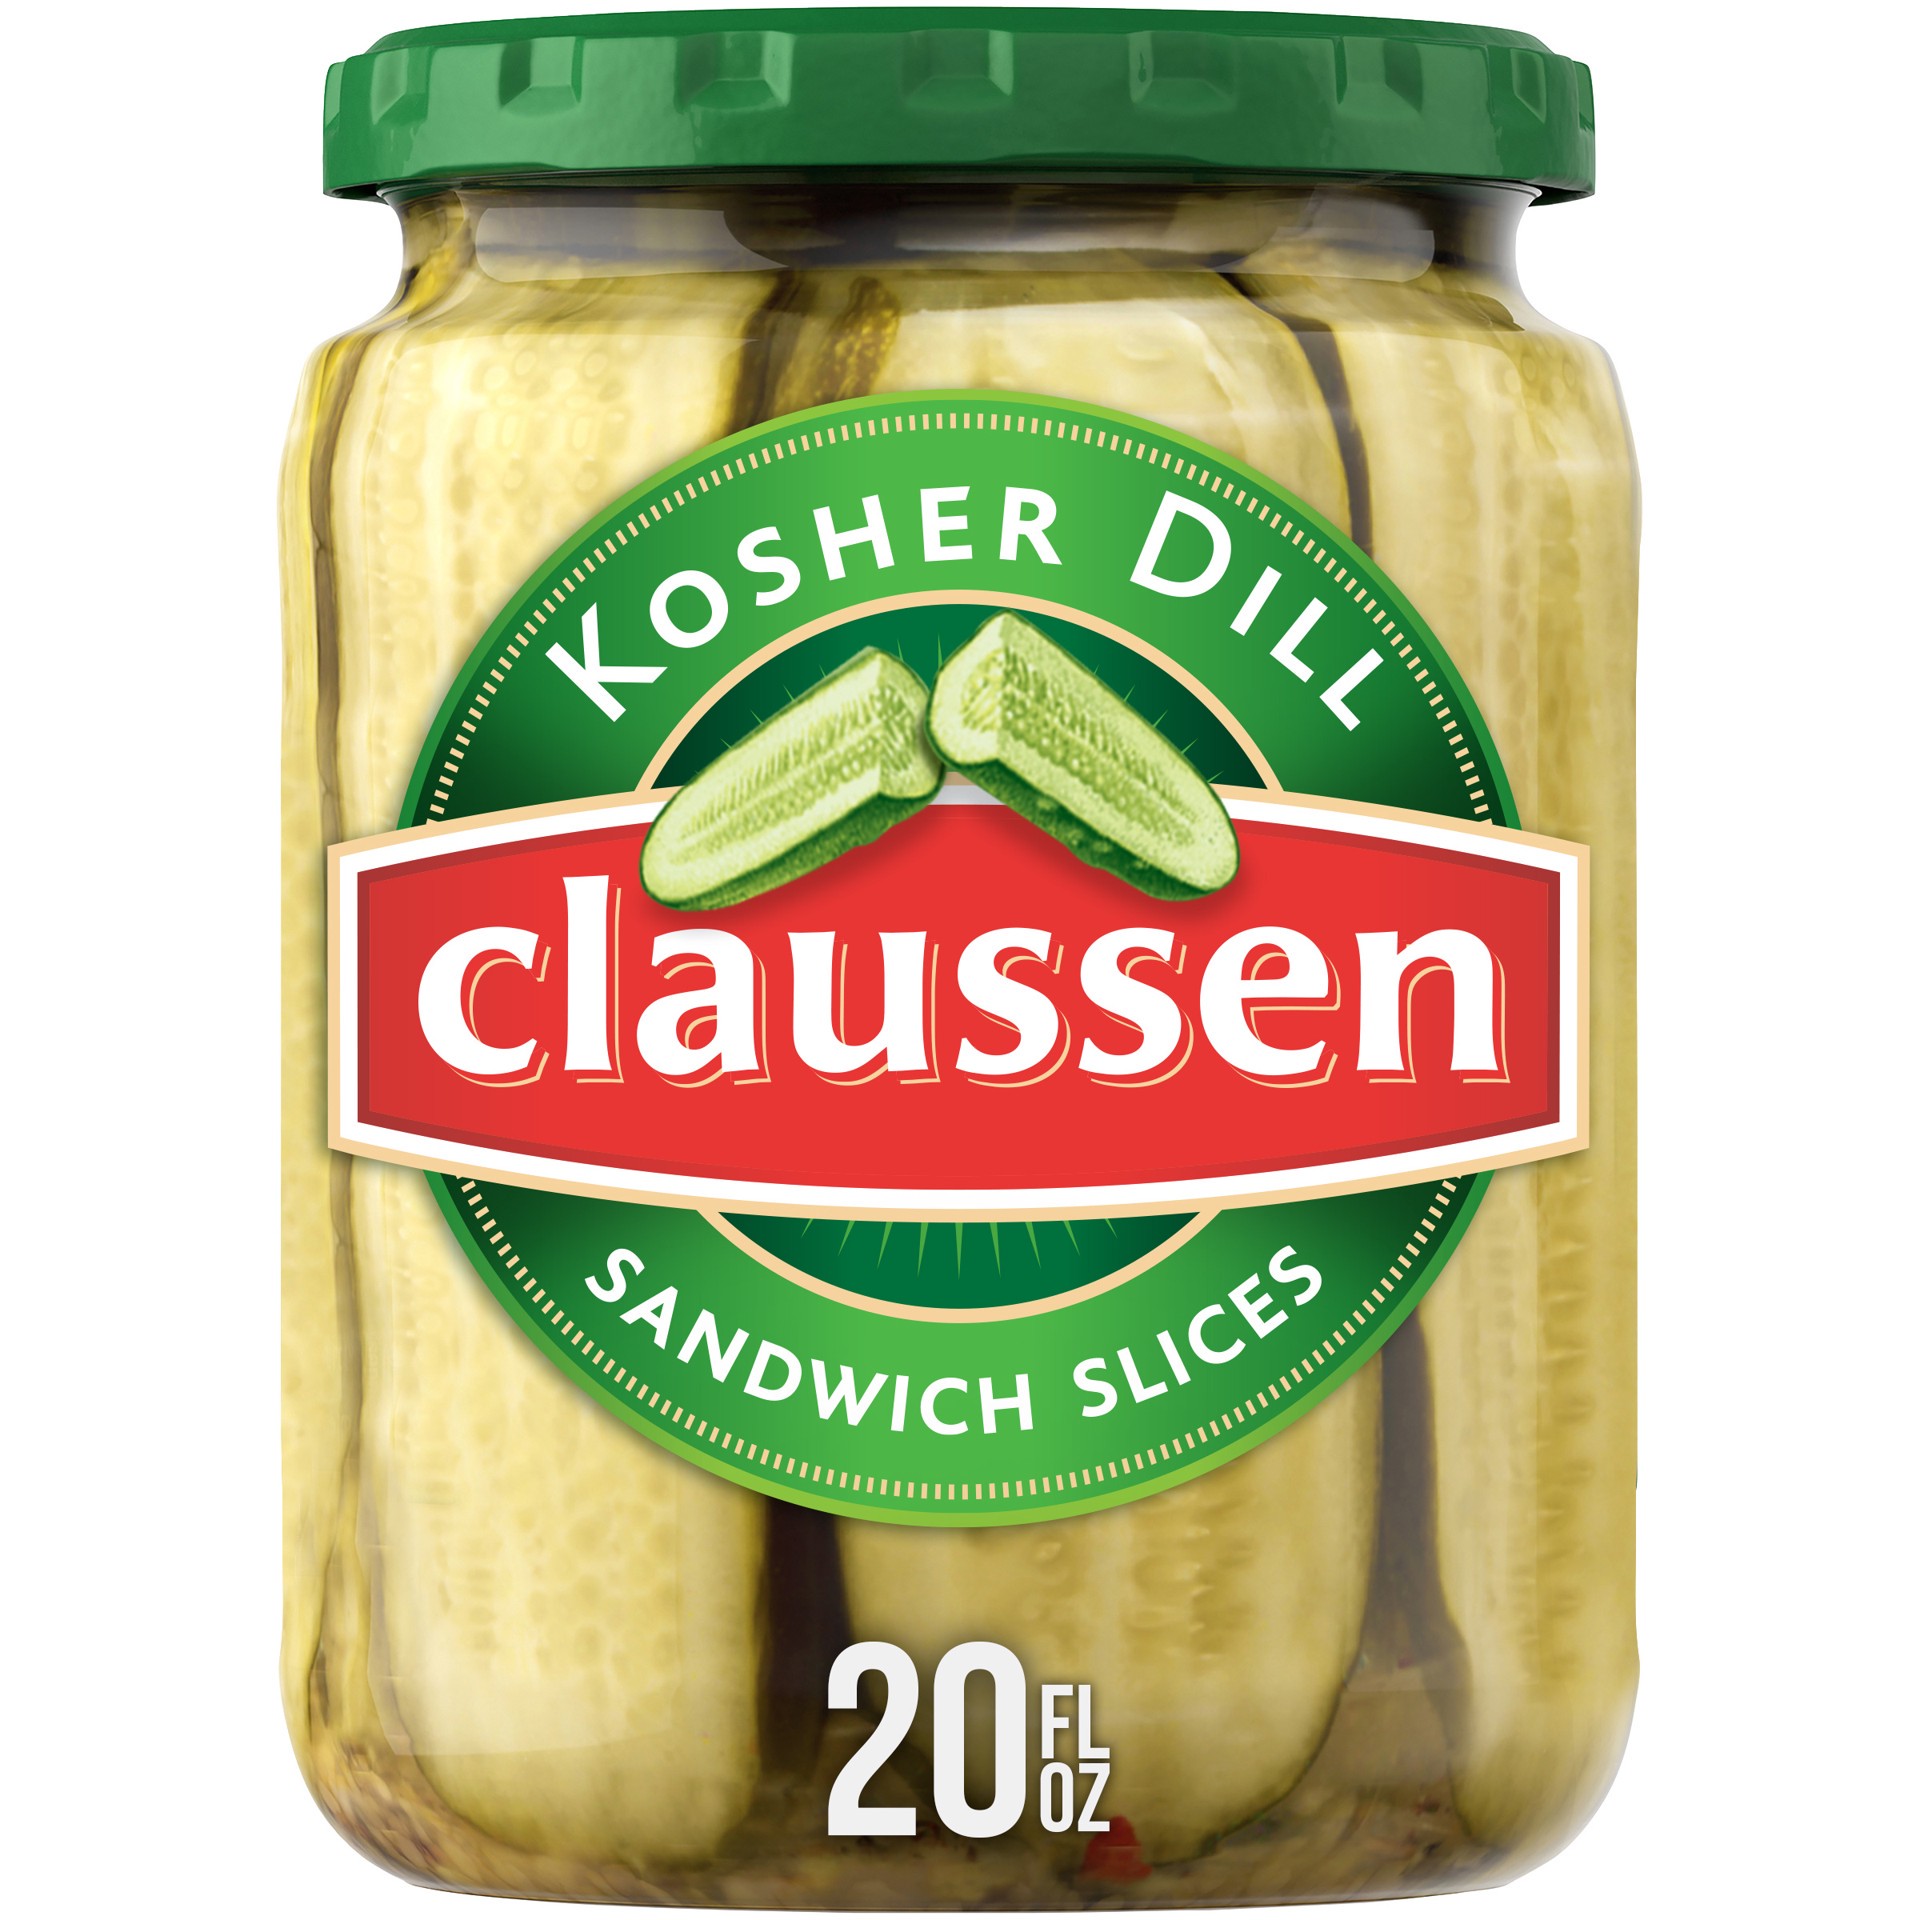 slide 1 of 144, Claussen Kosher Dill Pickle Sandwich Slices, 20 fl. oz. Jar, 20 fl oz